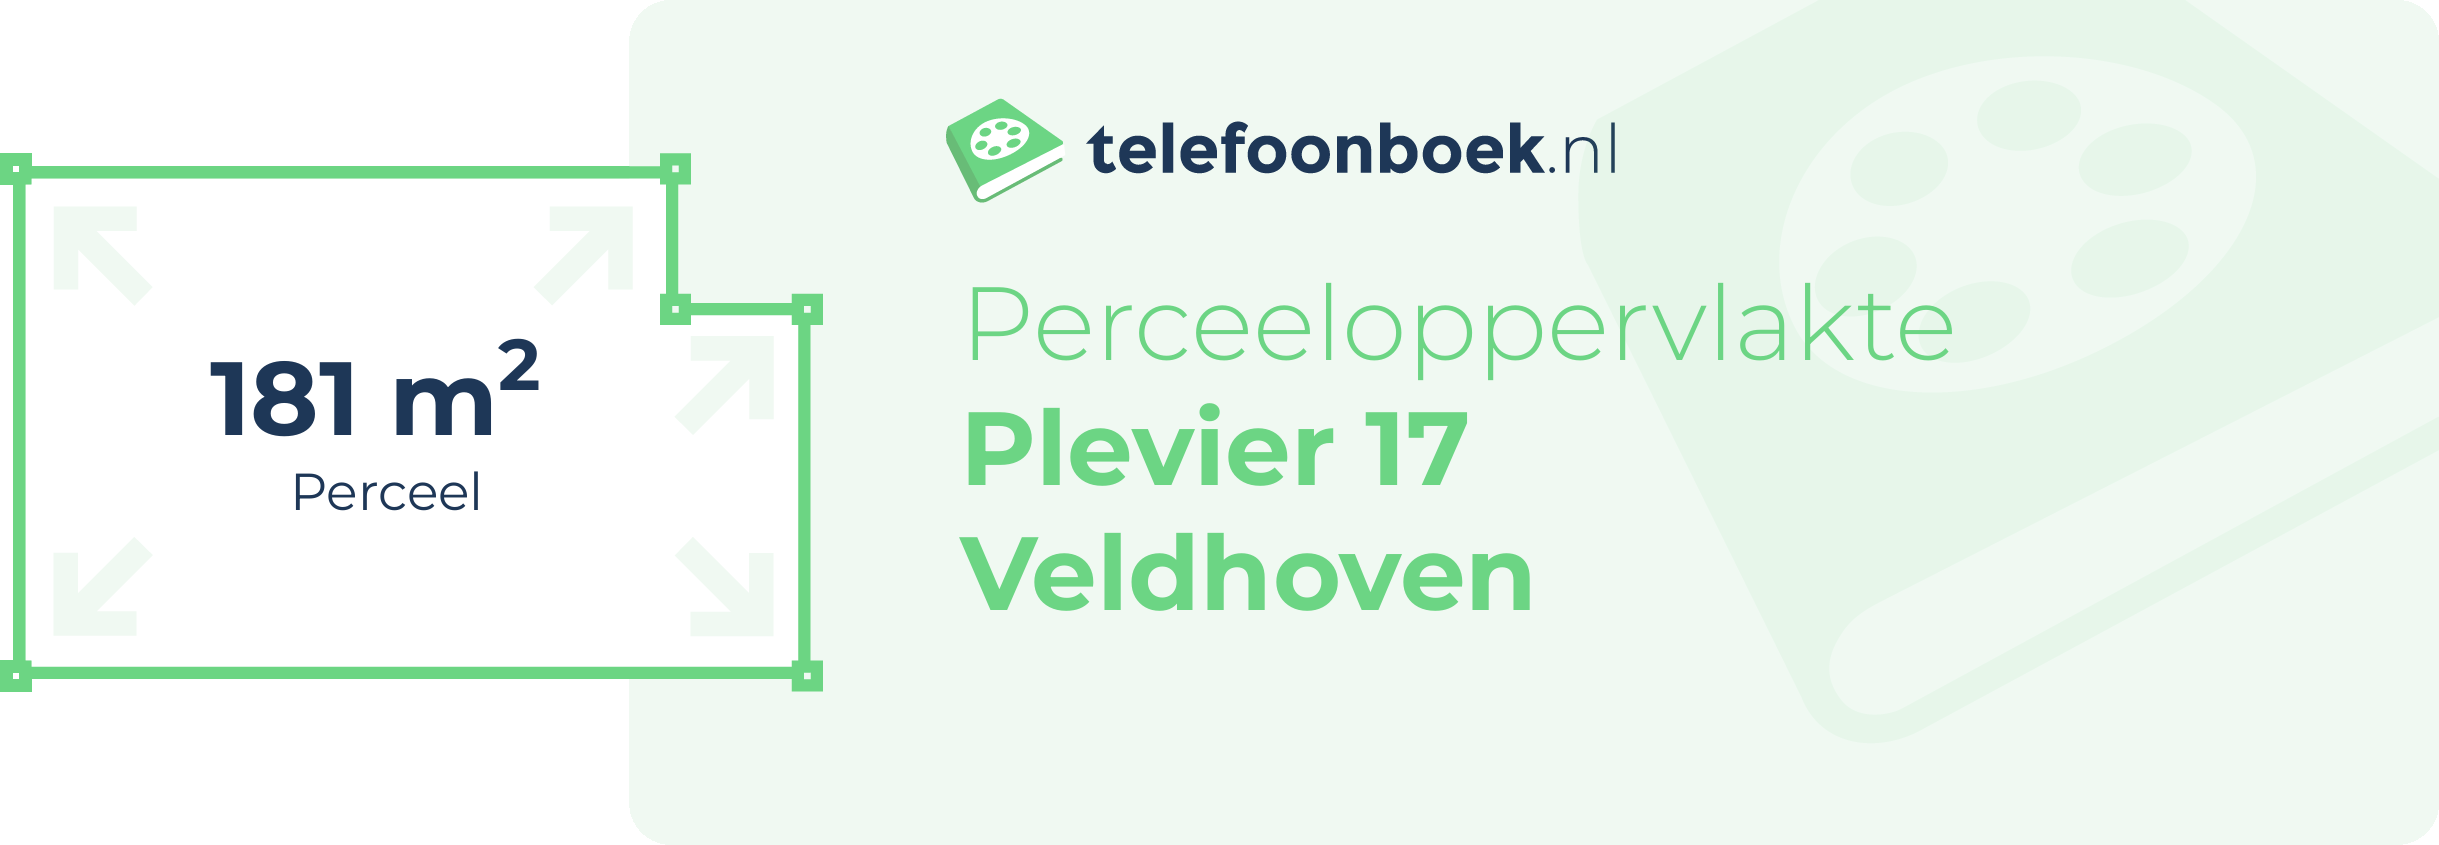 Perceeloppervlakte Plevier 17 Veldhoven